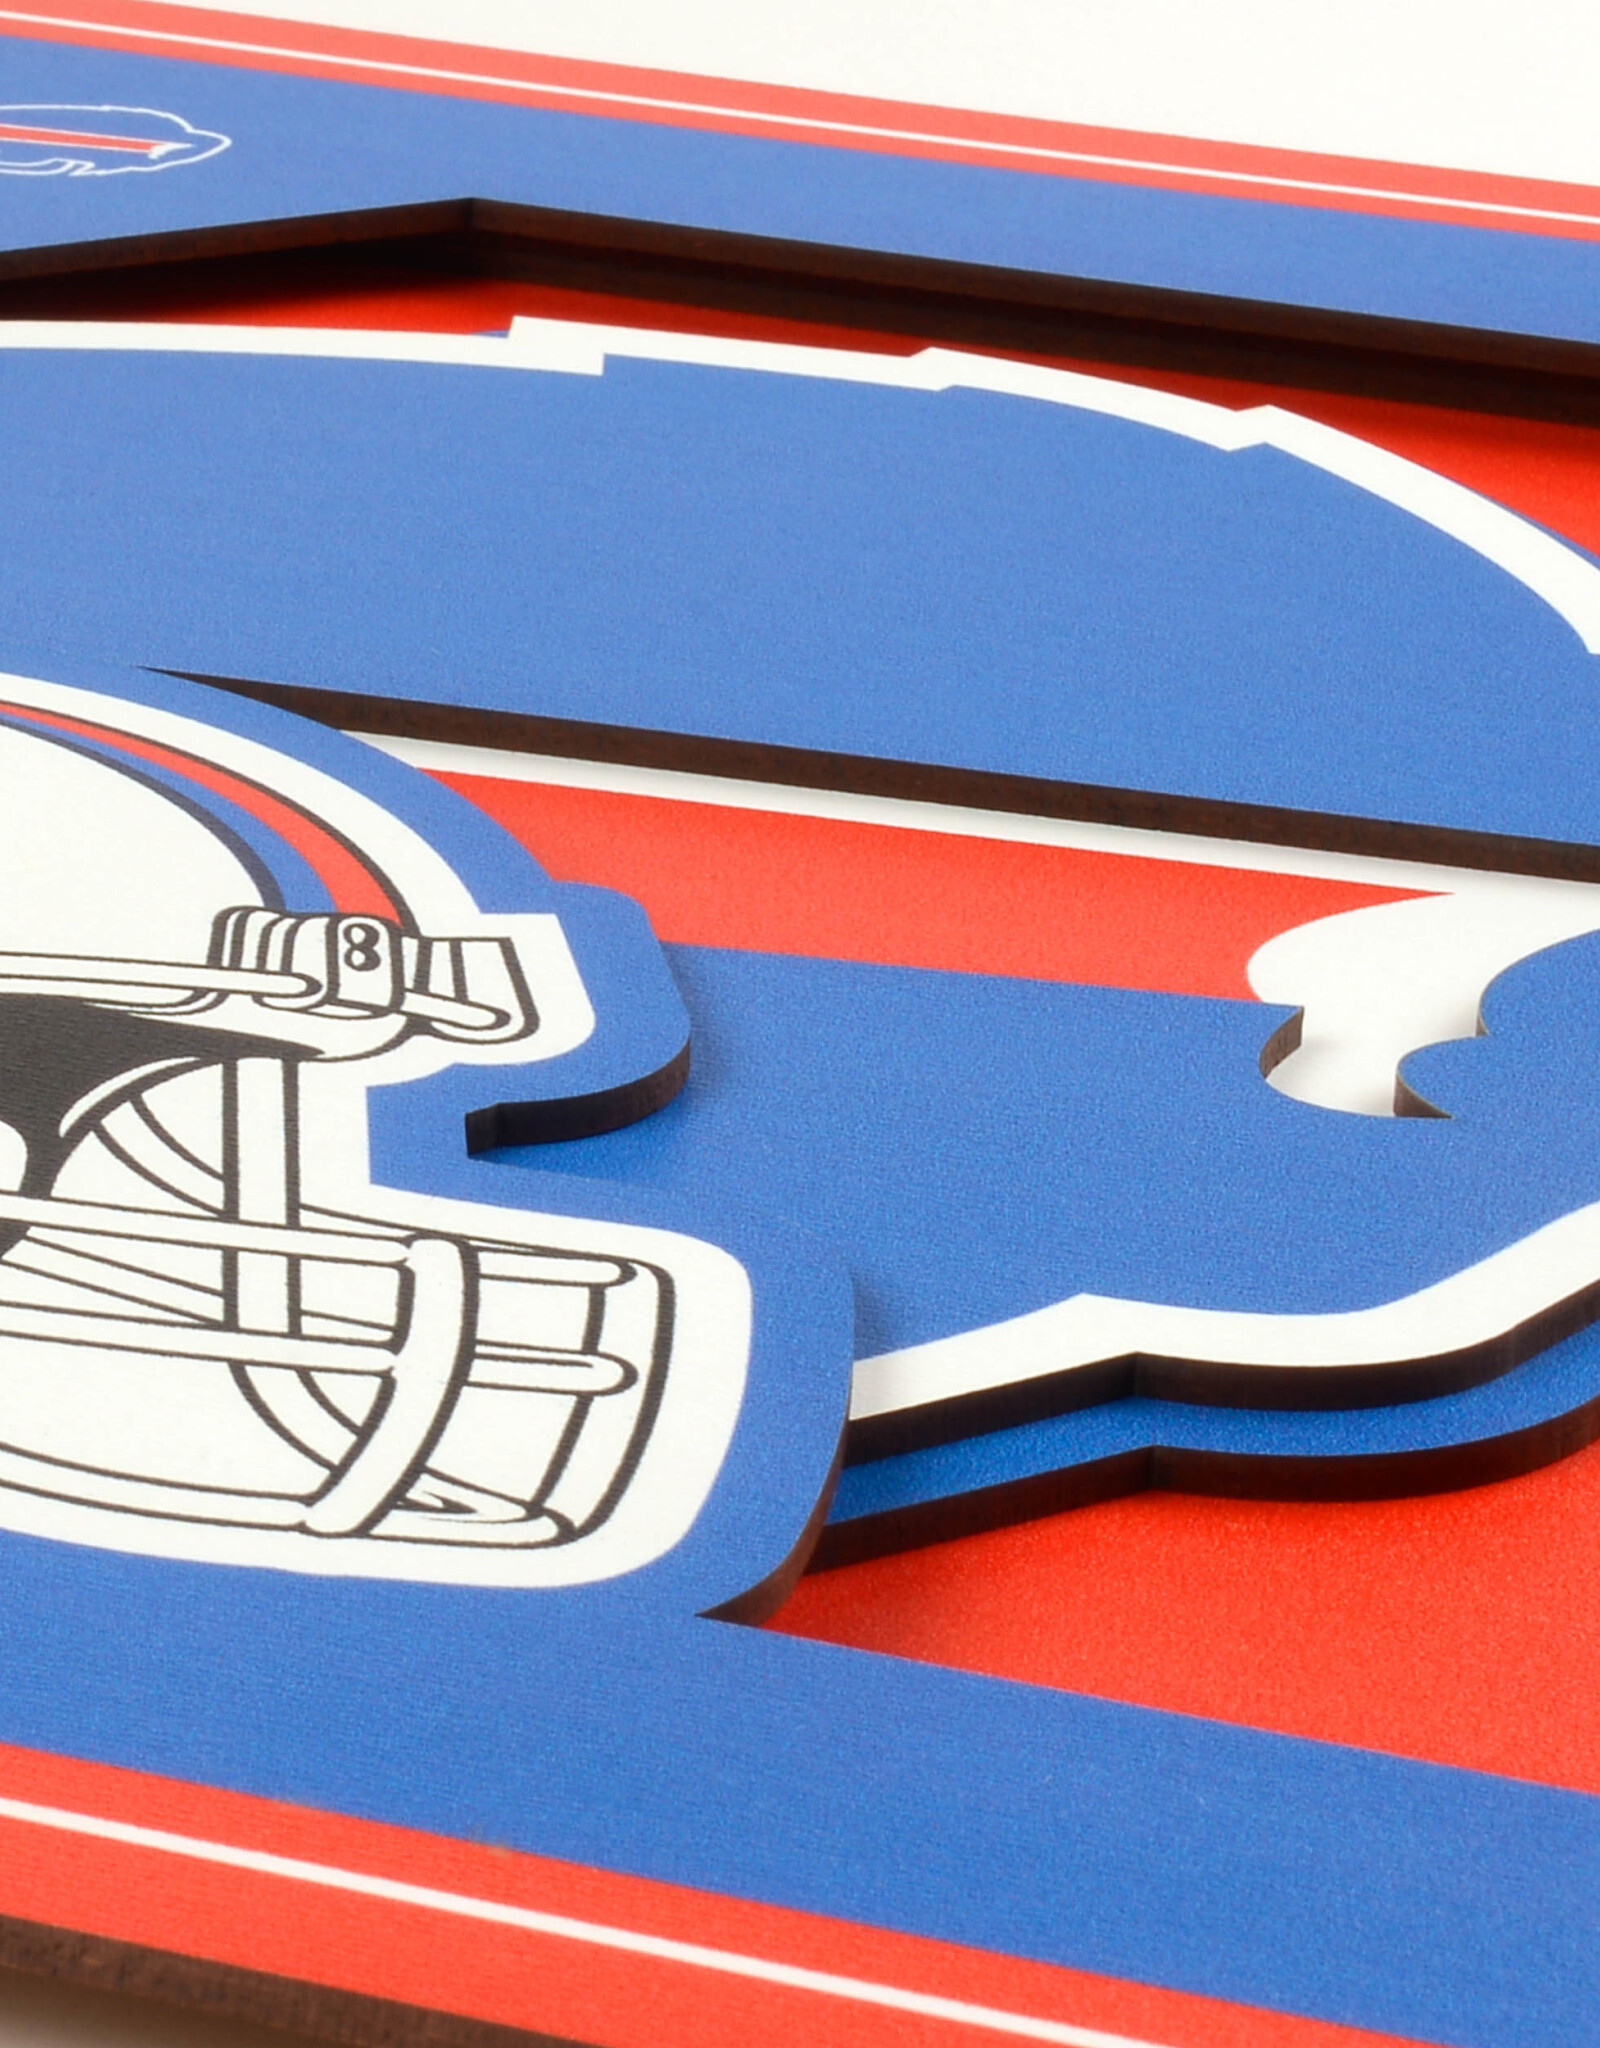 YOU THE FAN Buffalo Bills 3D Logo Series 12x12 Wall Art